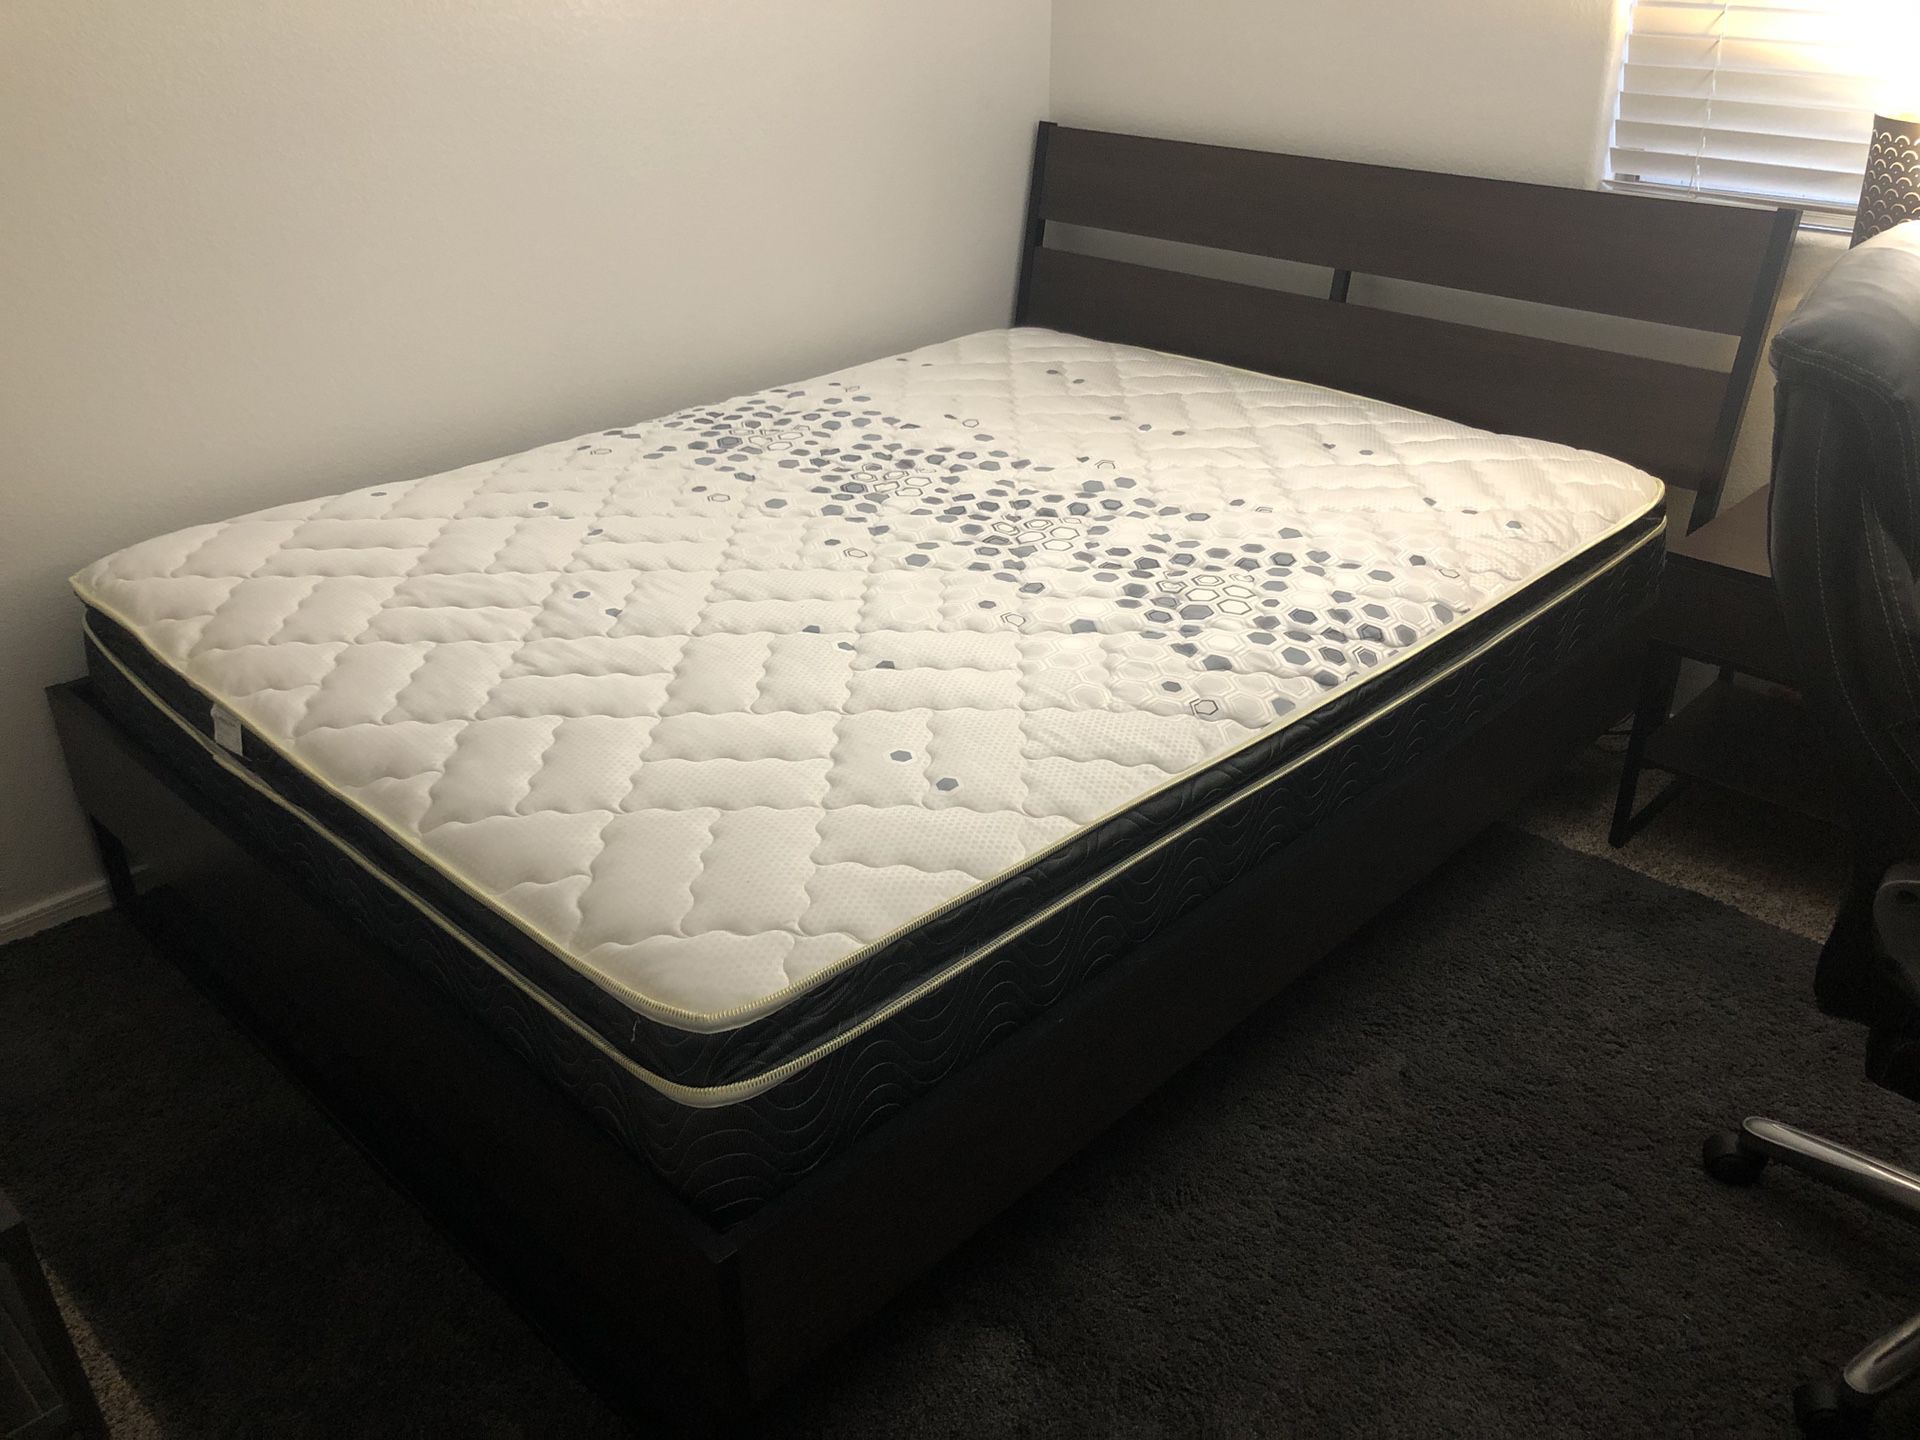 Queen size mattress, and bedroom set